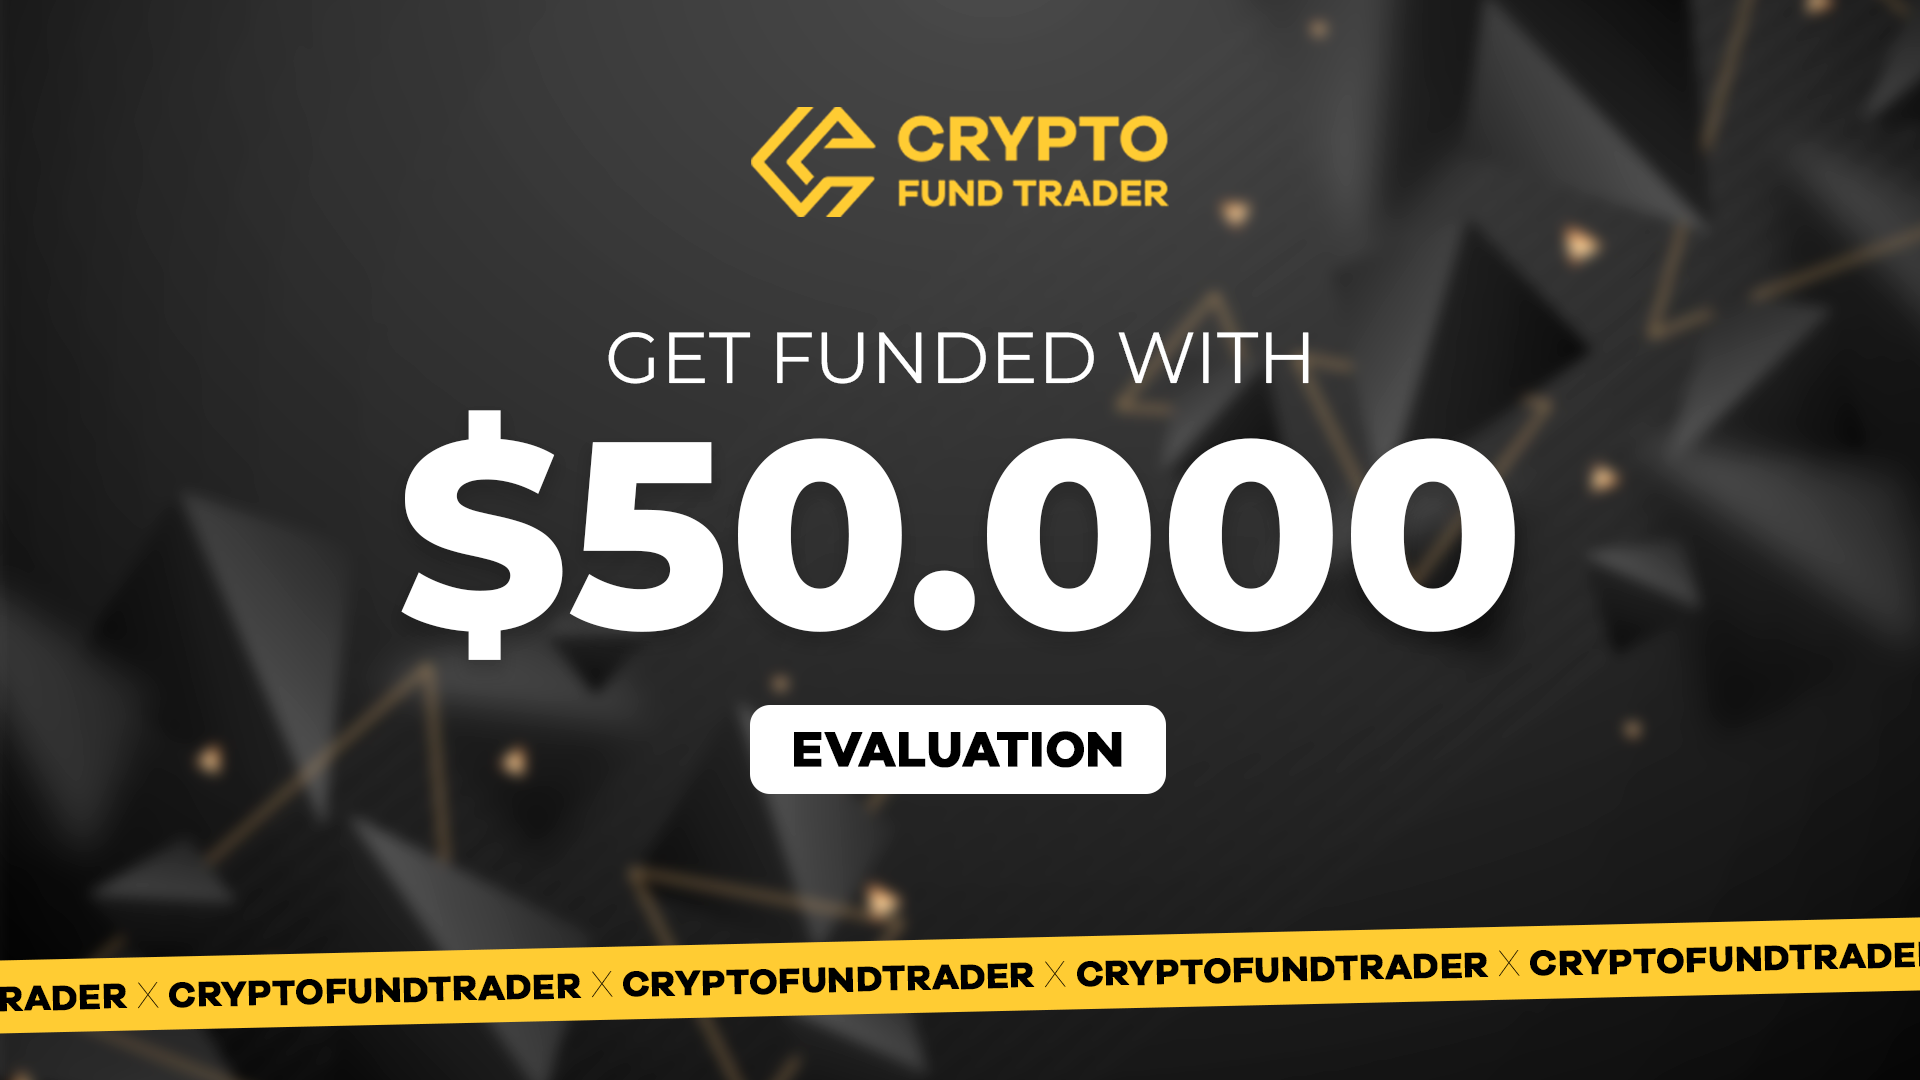 (337.86$) Crypto Fund Trader - $50.000 Evaluation Voucher